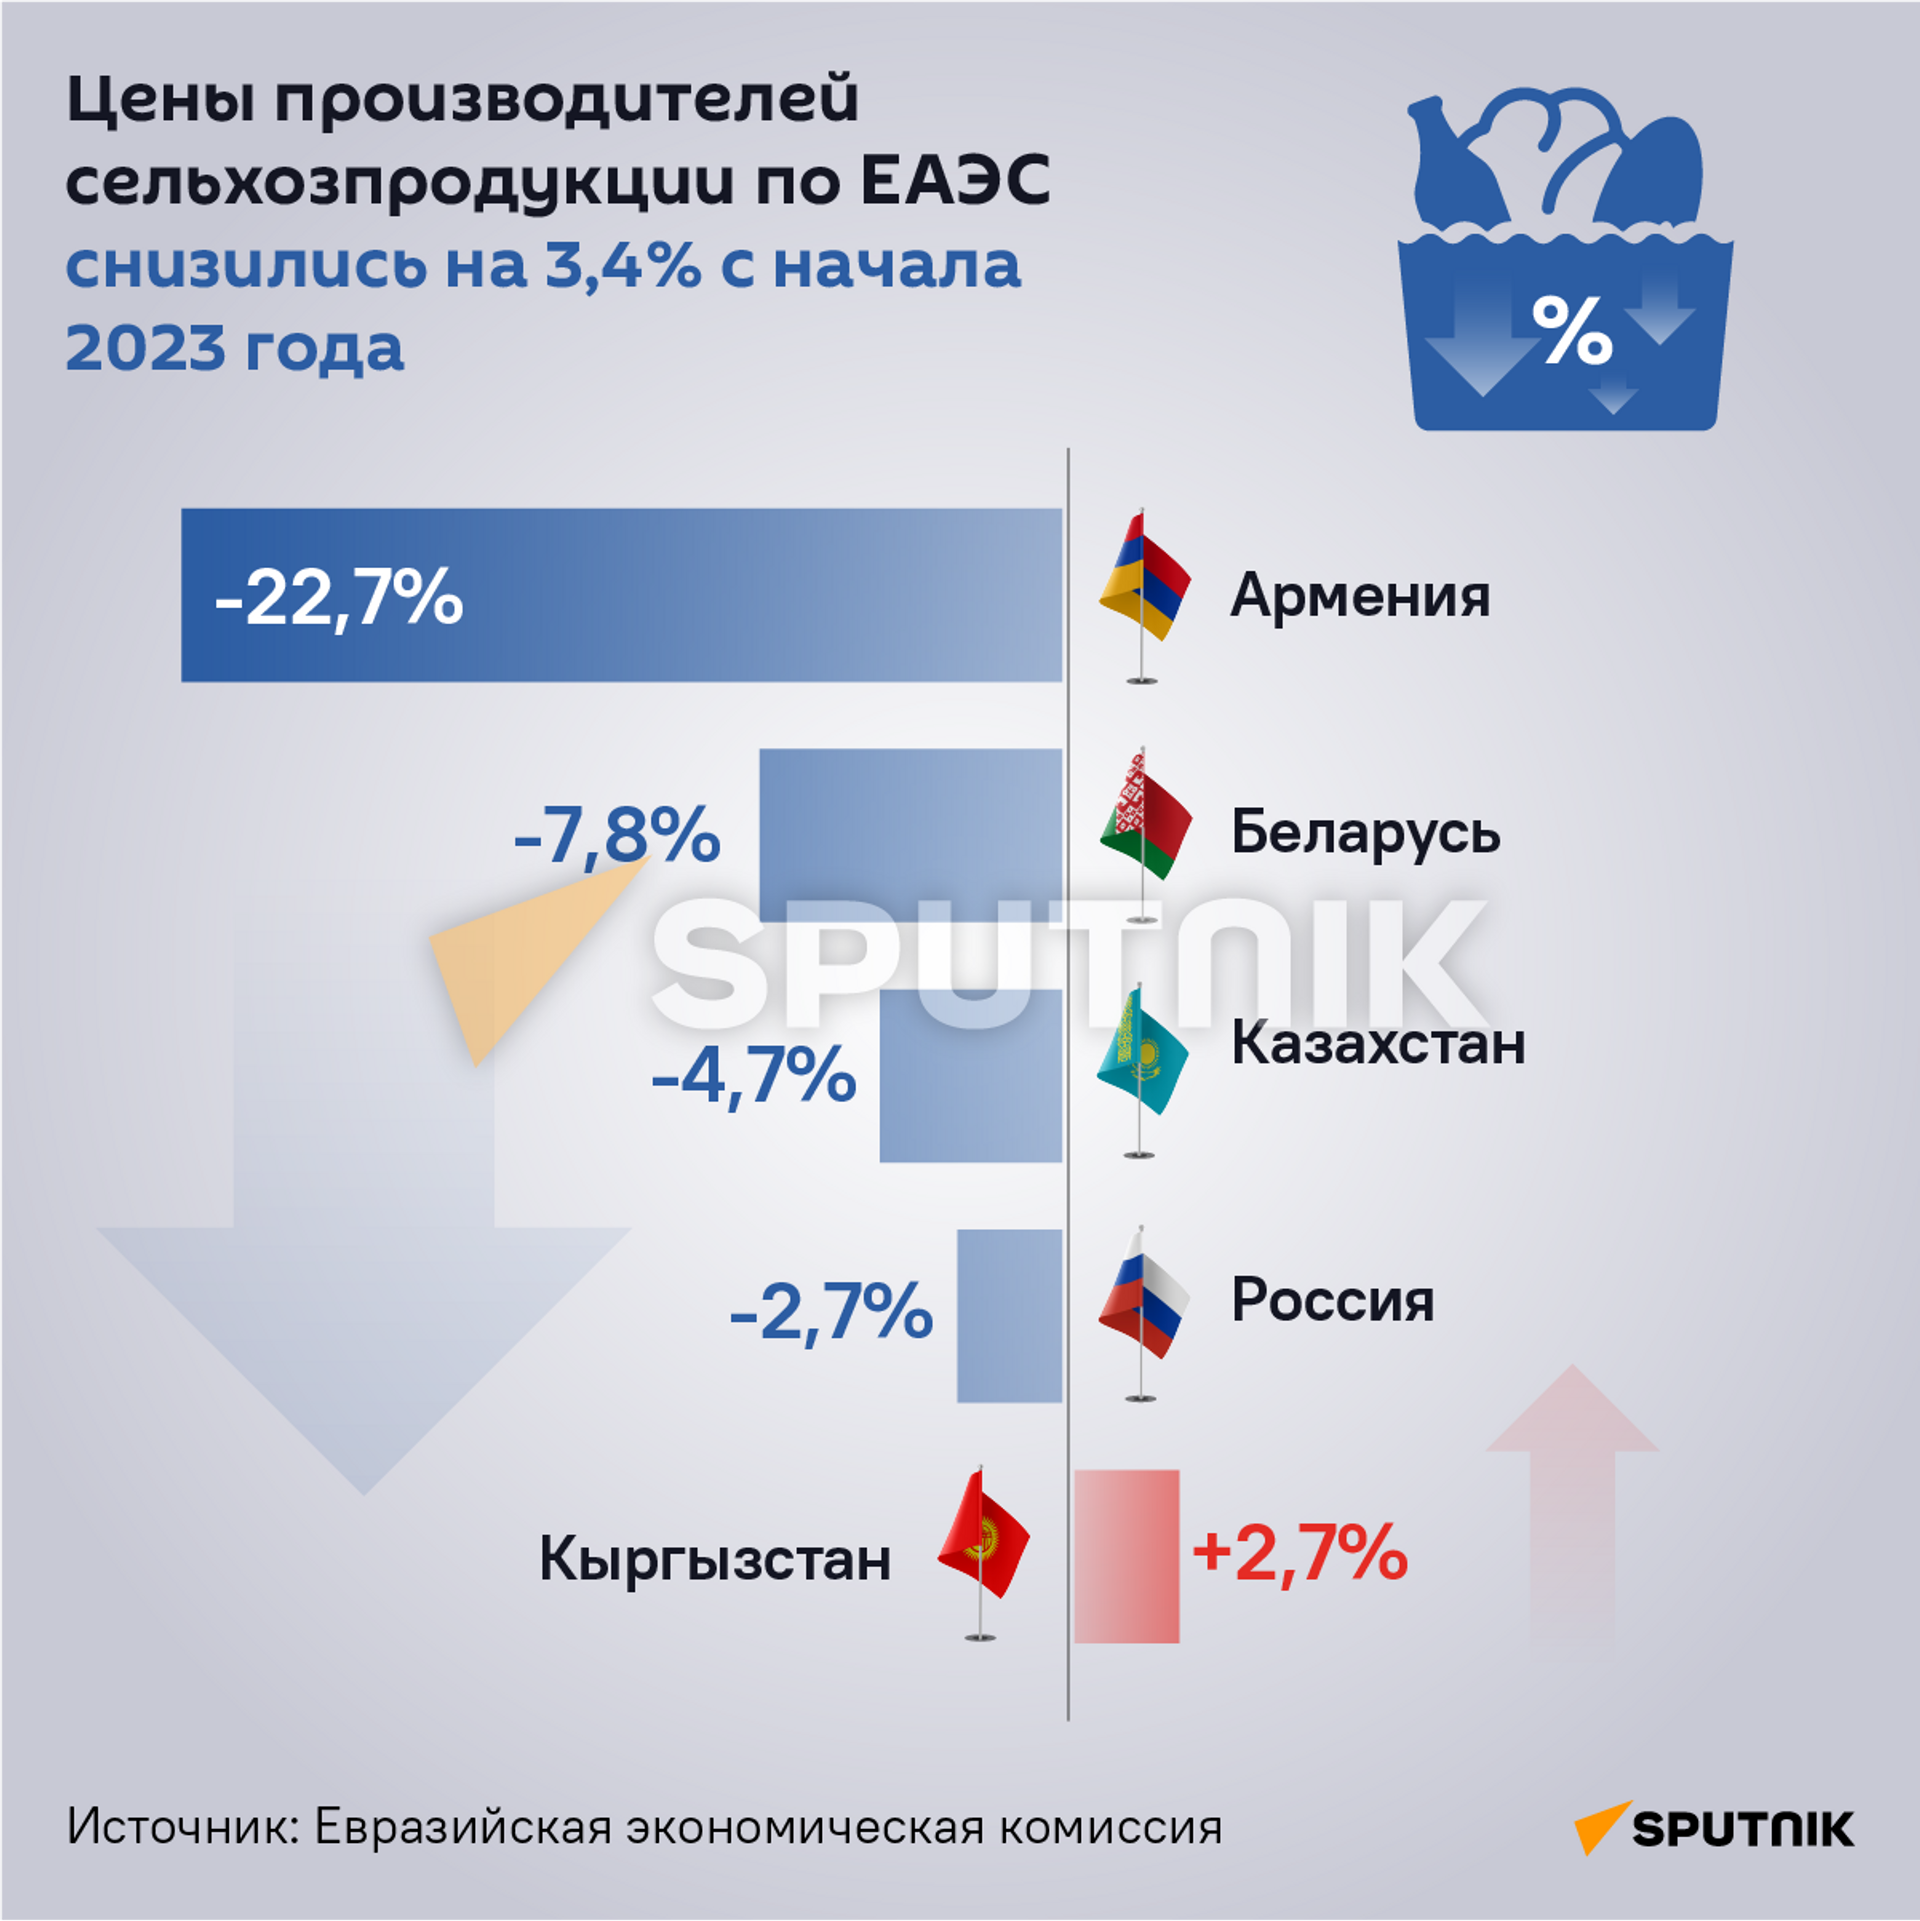 Цены производителей сельхозпродукции по ЕАЭС снизились на 3,4% с начала 2023 года - Sputnik Армения, 1920, 29.08.2023